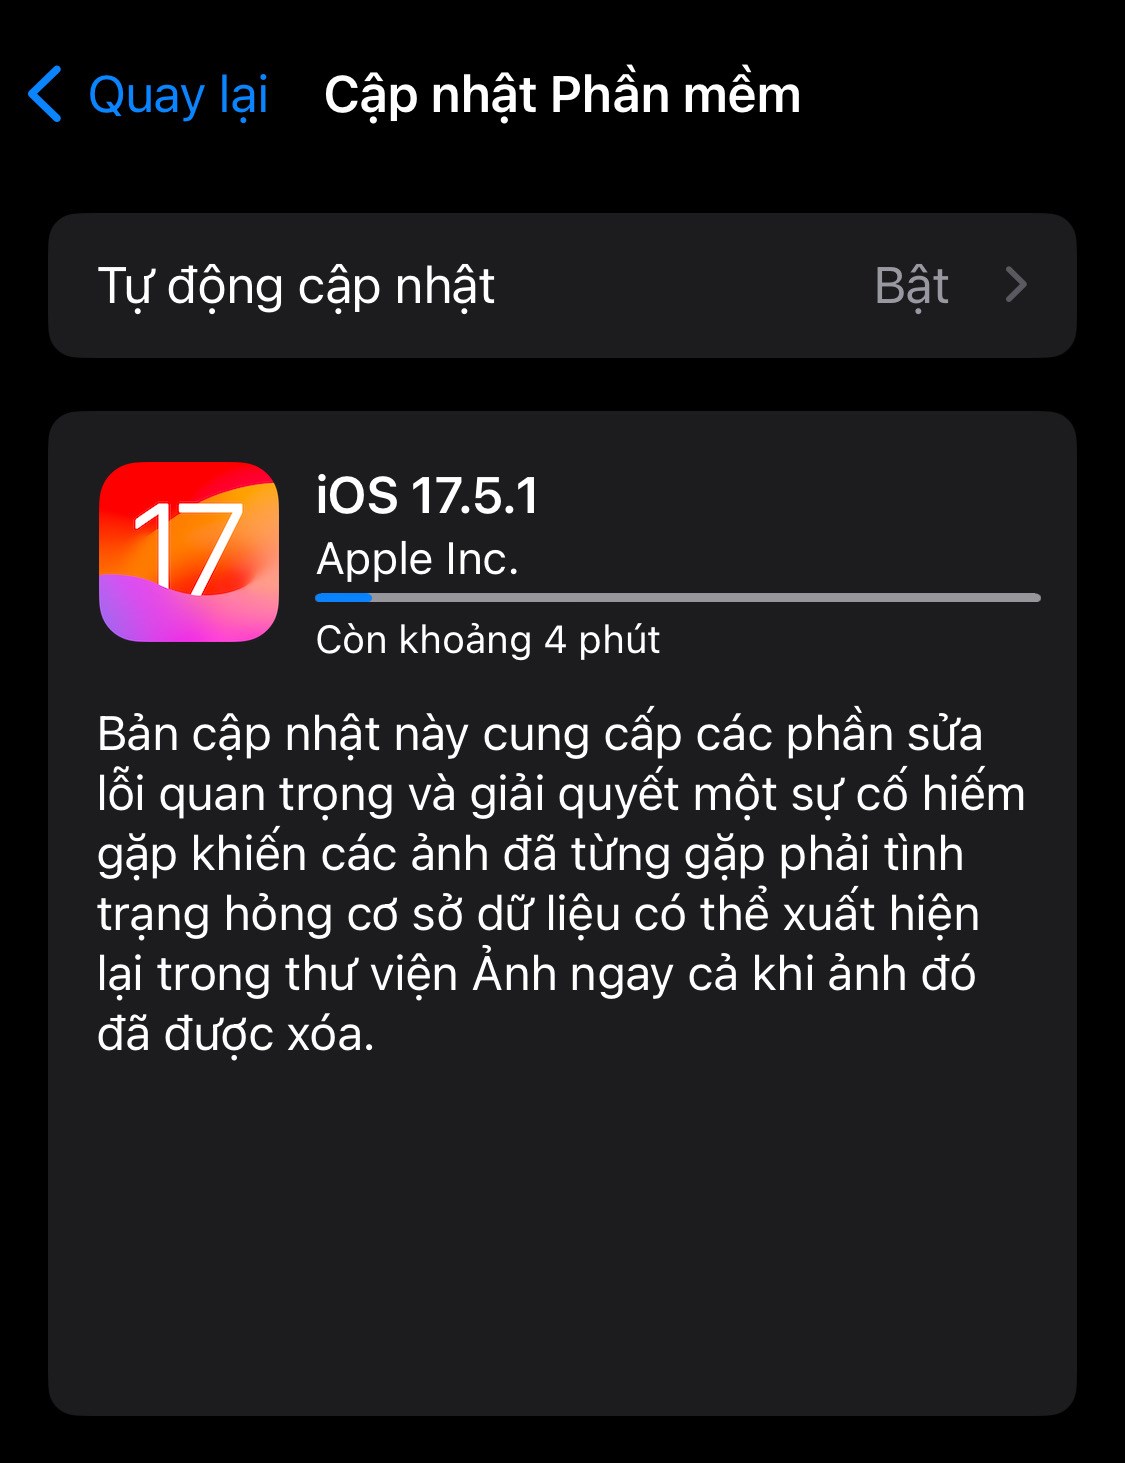 Hình ảnh cập nhật của iOS 17.5.1, Apple đã giải thích về bản cập nhật này (Ảnh: Internet)